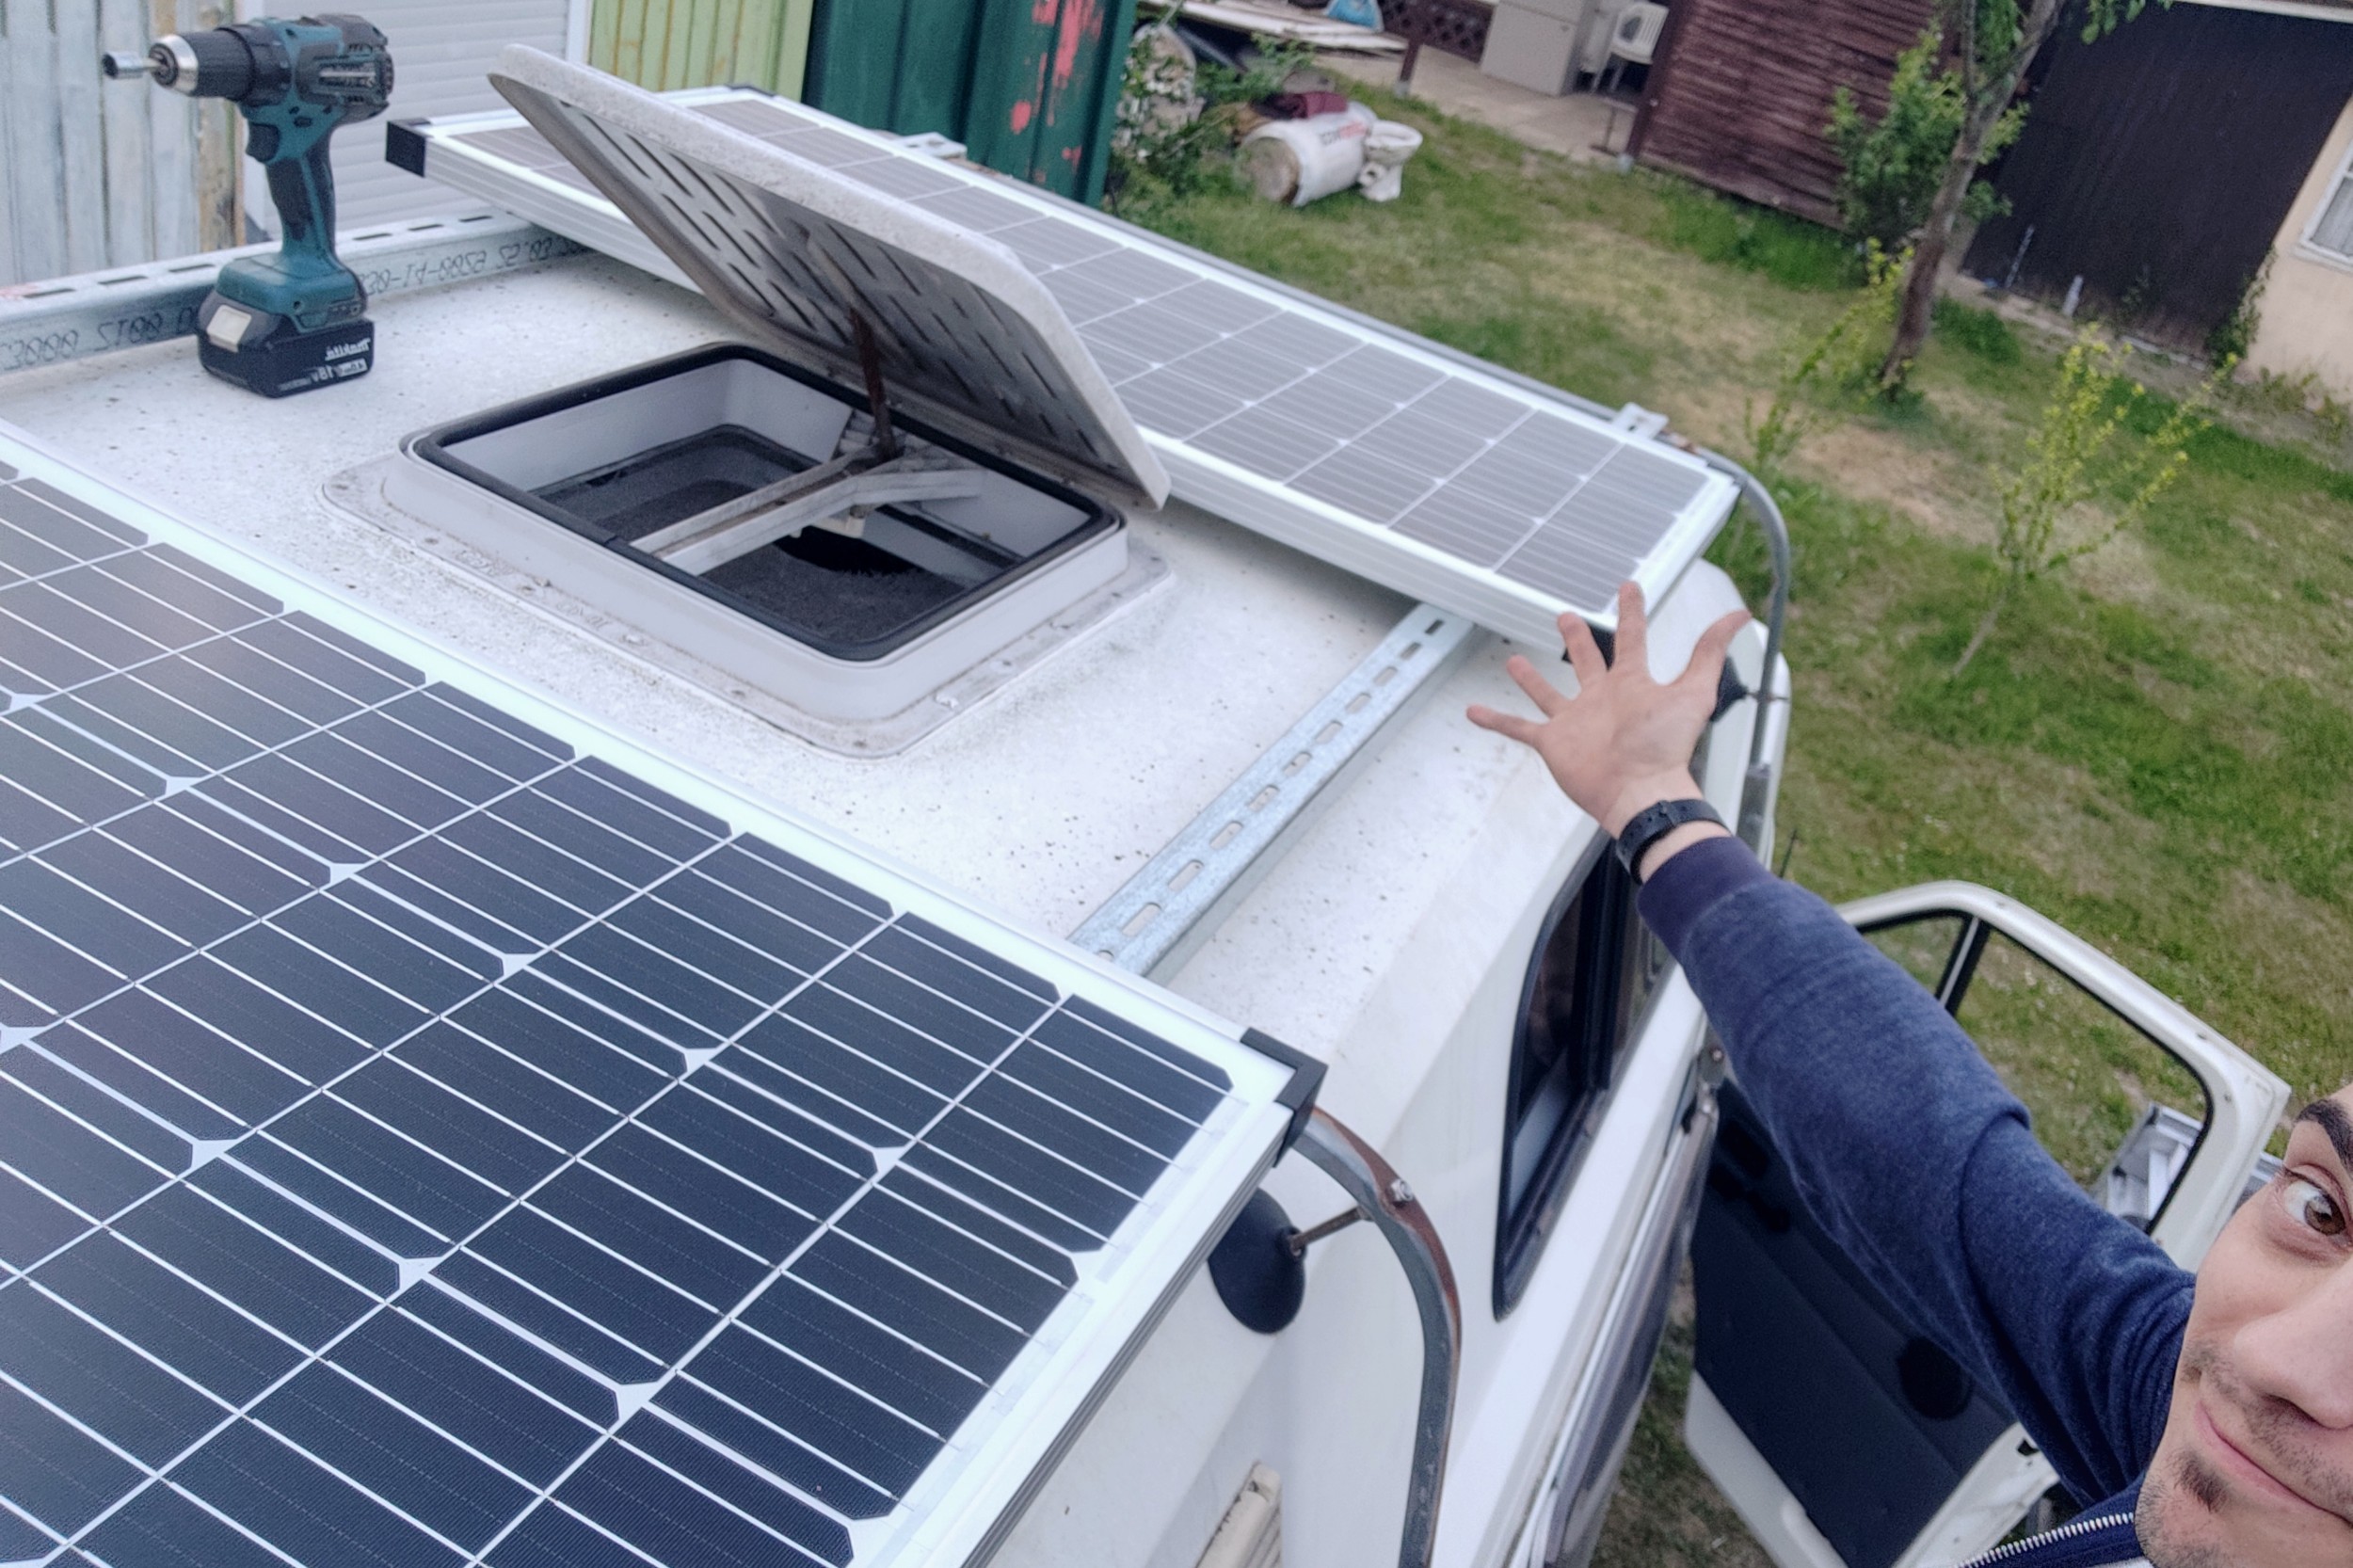 Cómo instalar placas solares en tu Autocaravana o Camper